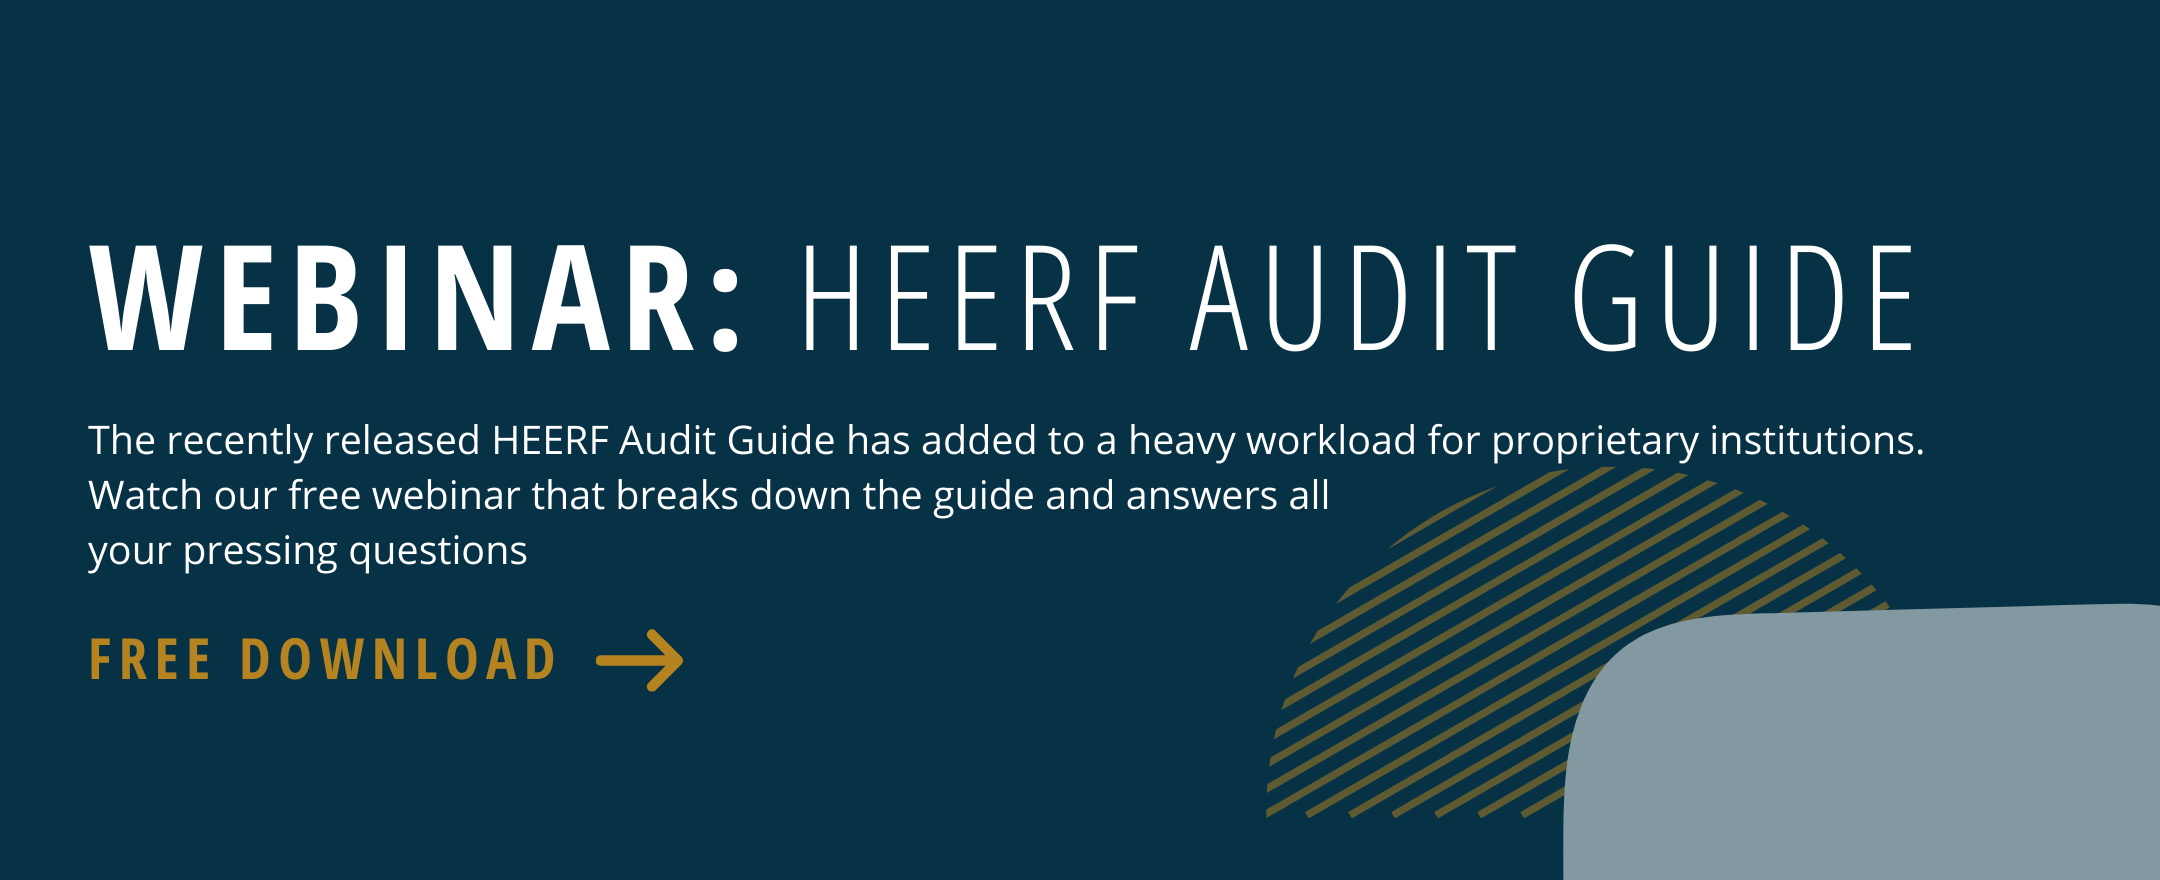 HEERF audit guide webinar free download